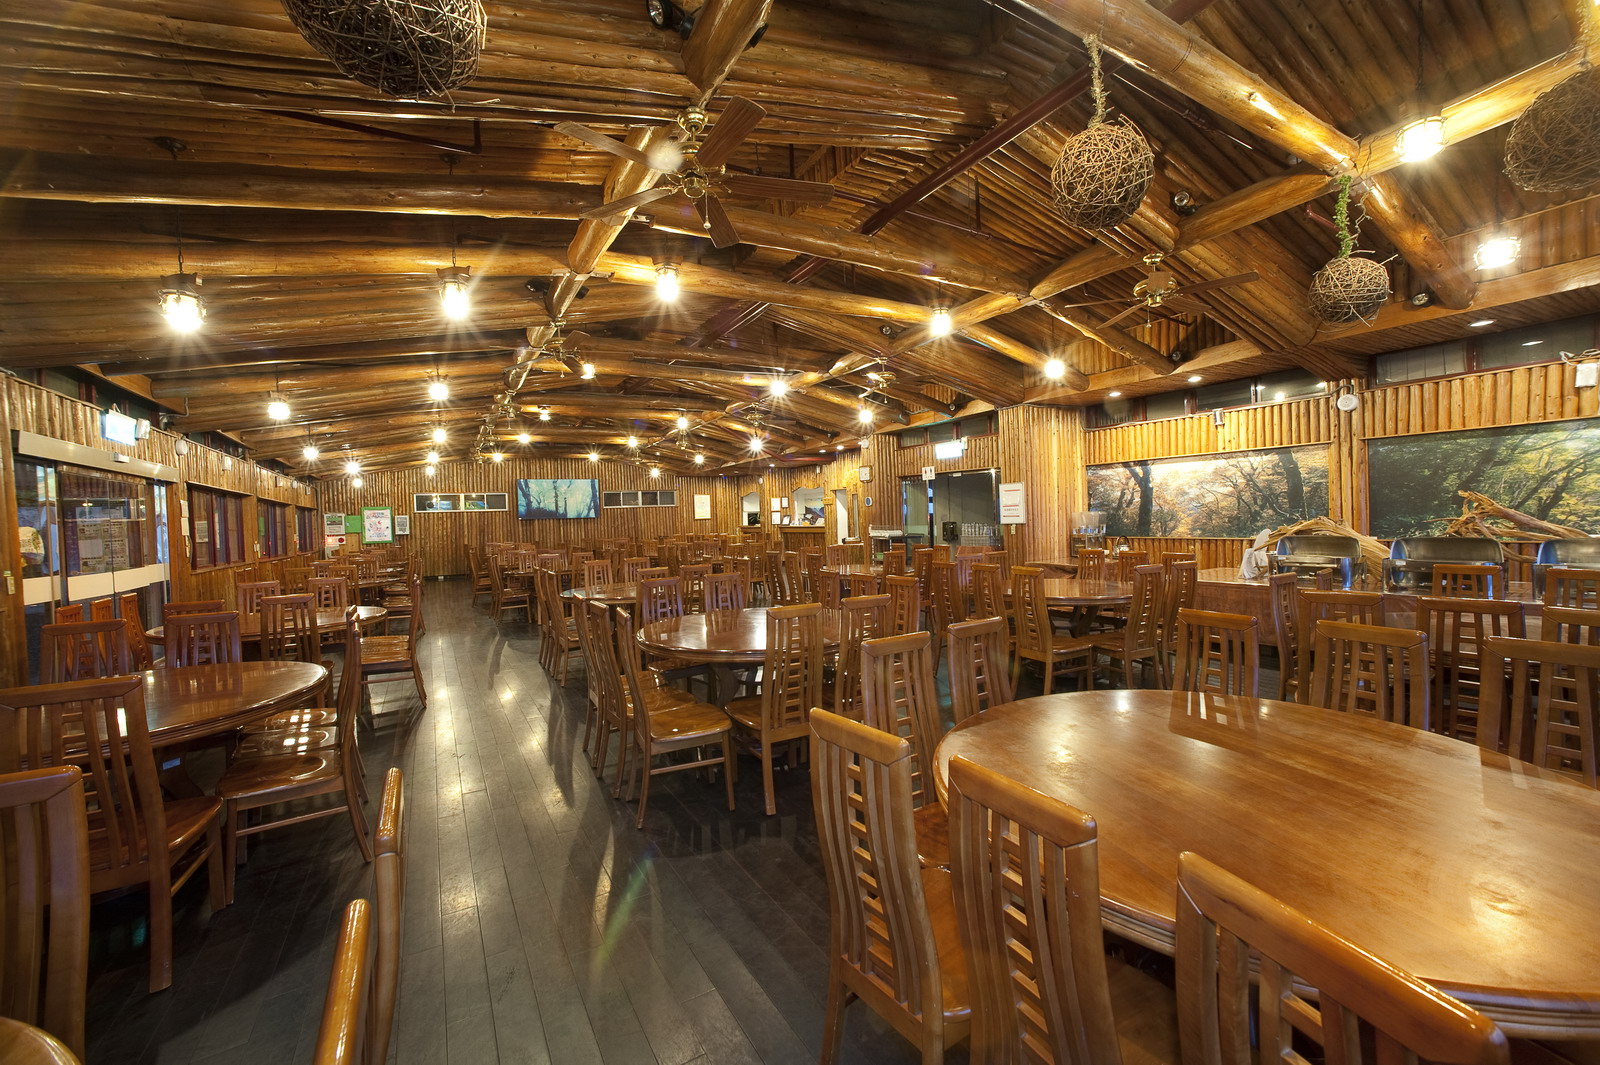 太平山莊餐廳整修 暫時改售林場便當